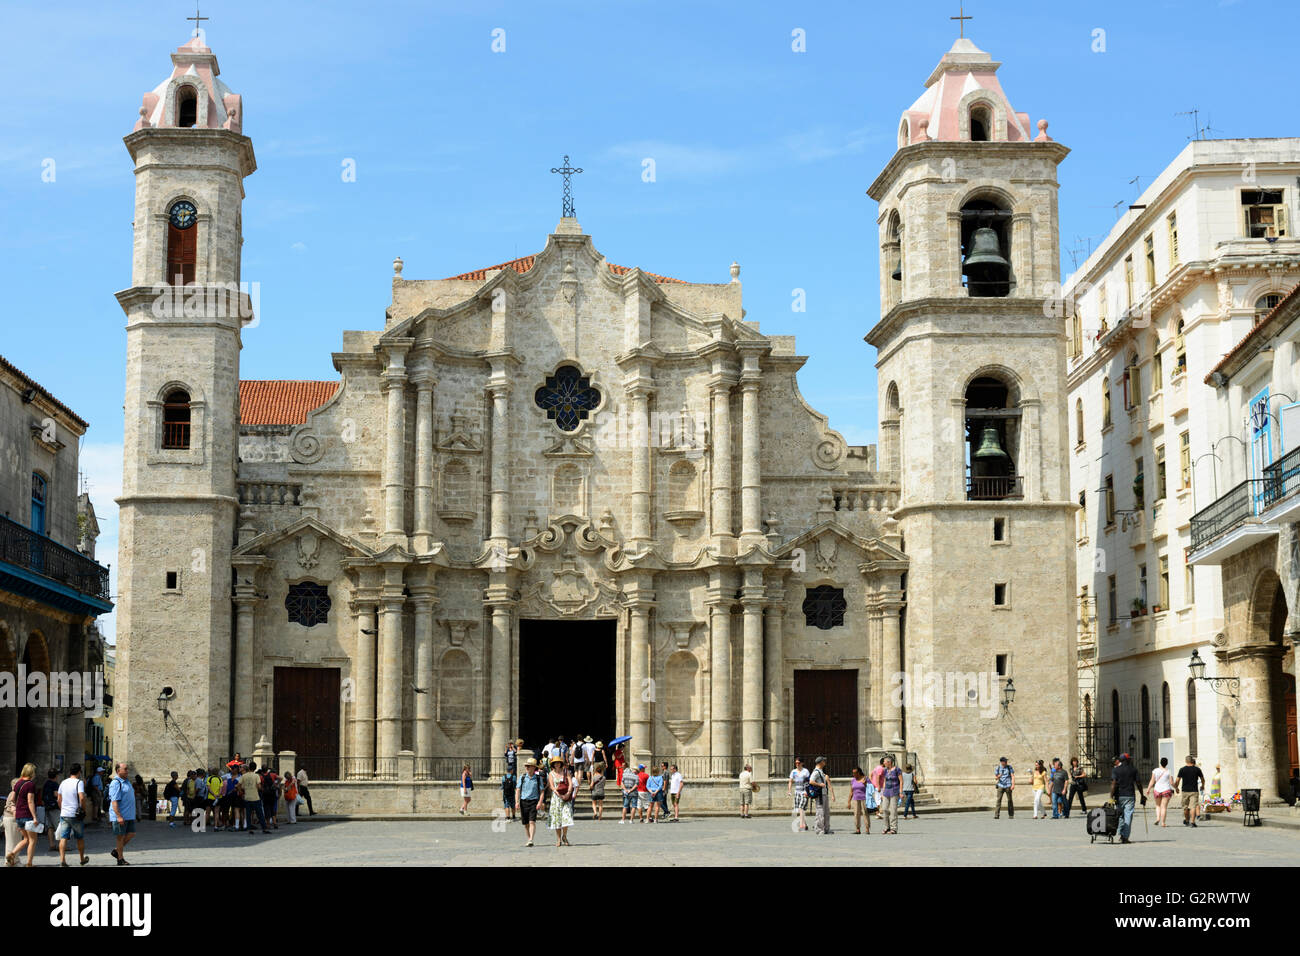 Kathedrale der Heiligen Jungfrau der Unbefleckten Empfängnis, Plaza De La Catedral (Domplatz), Havanna, Kuba Stockfoto